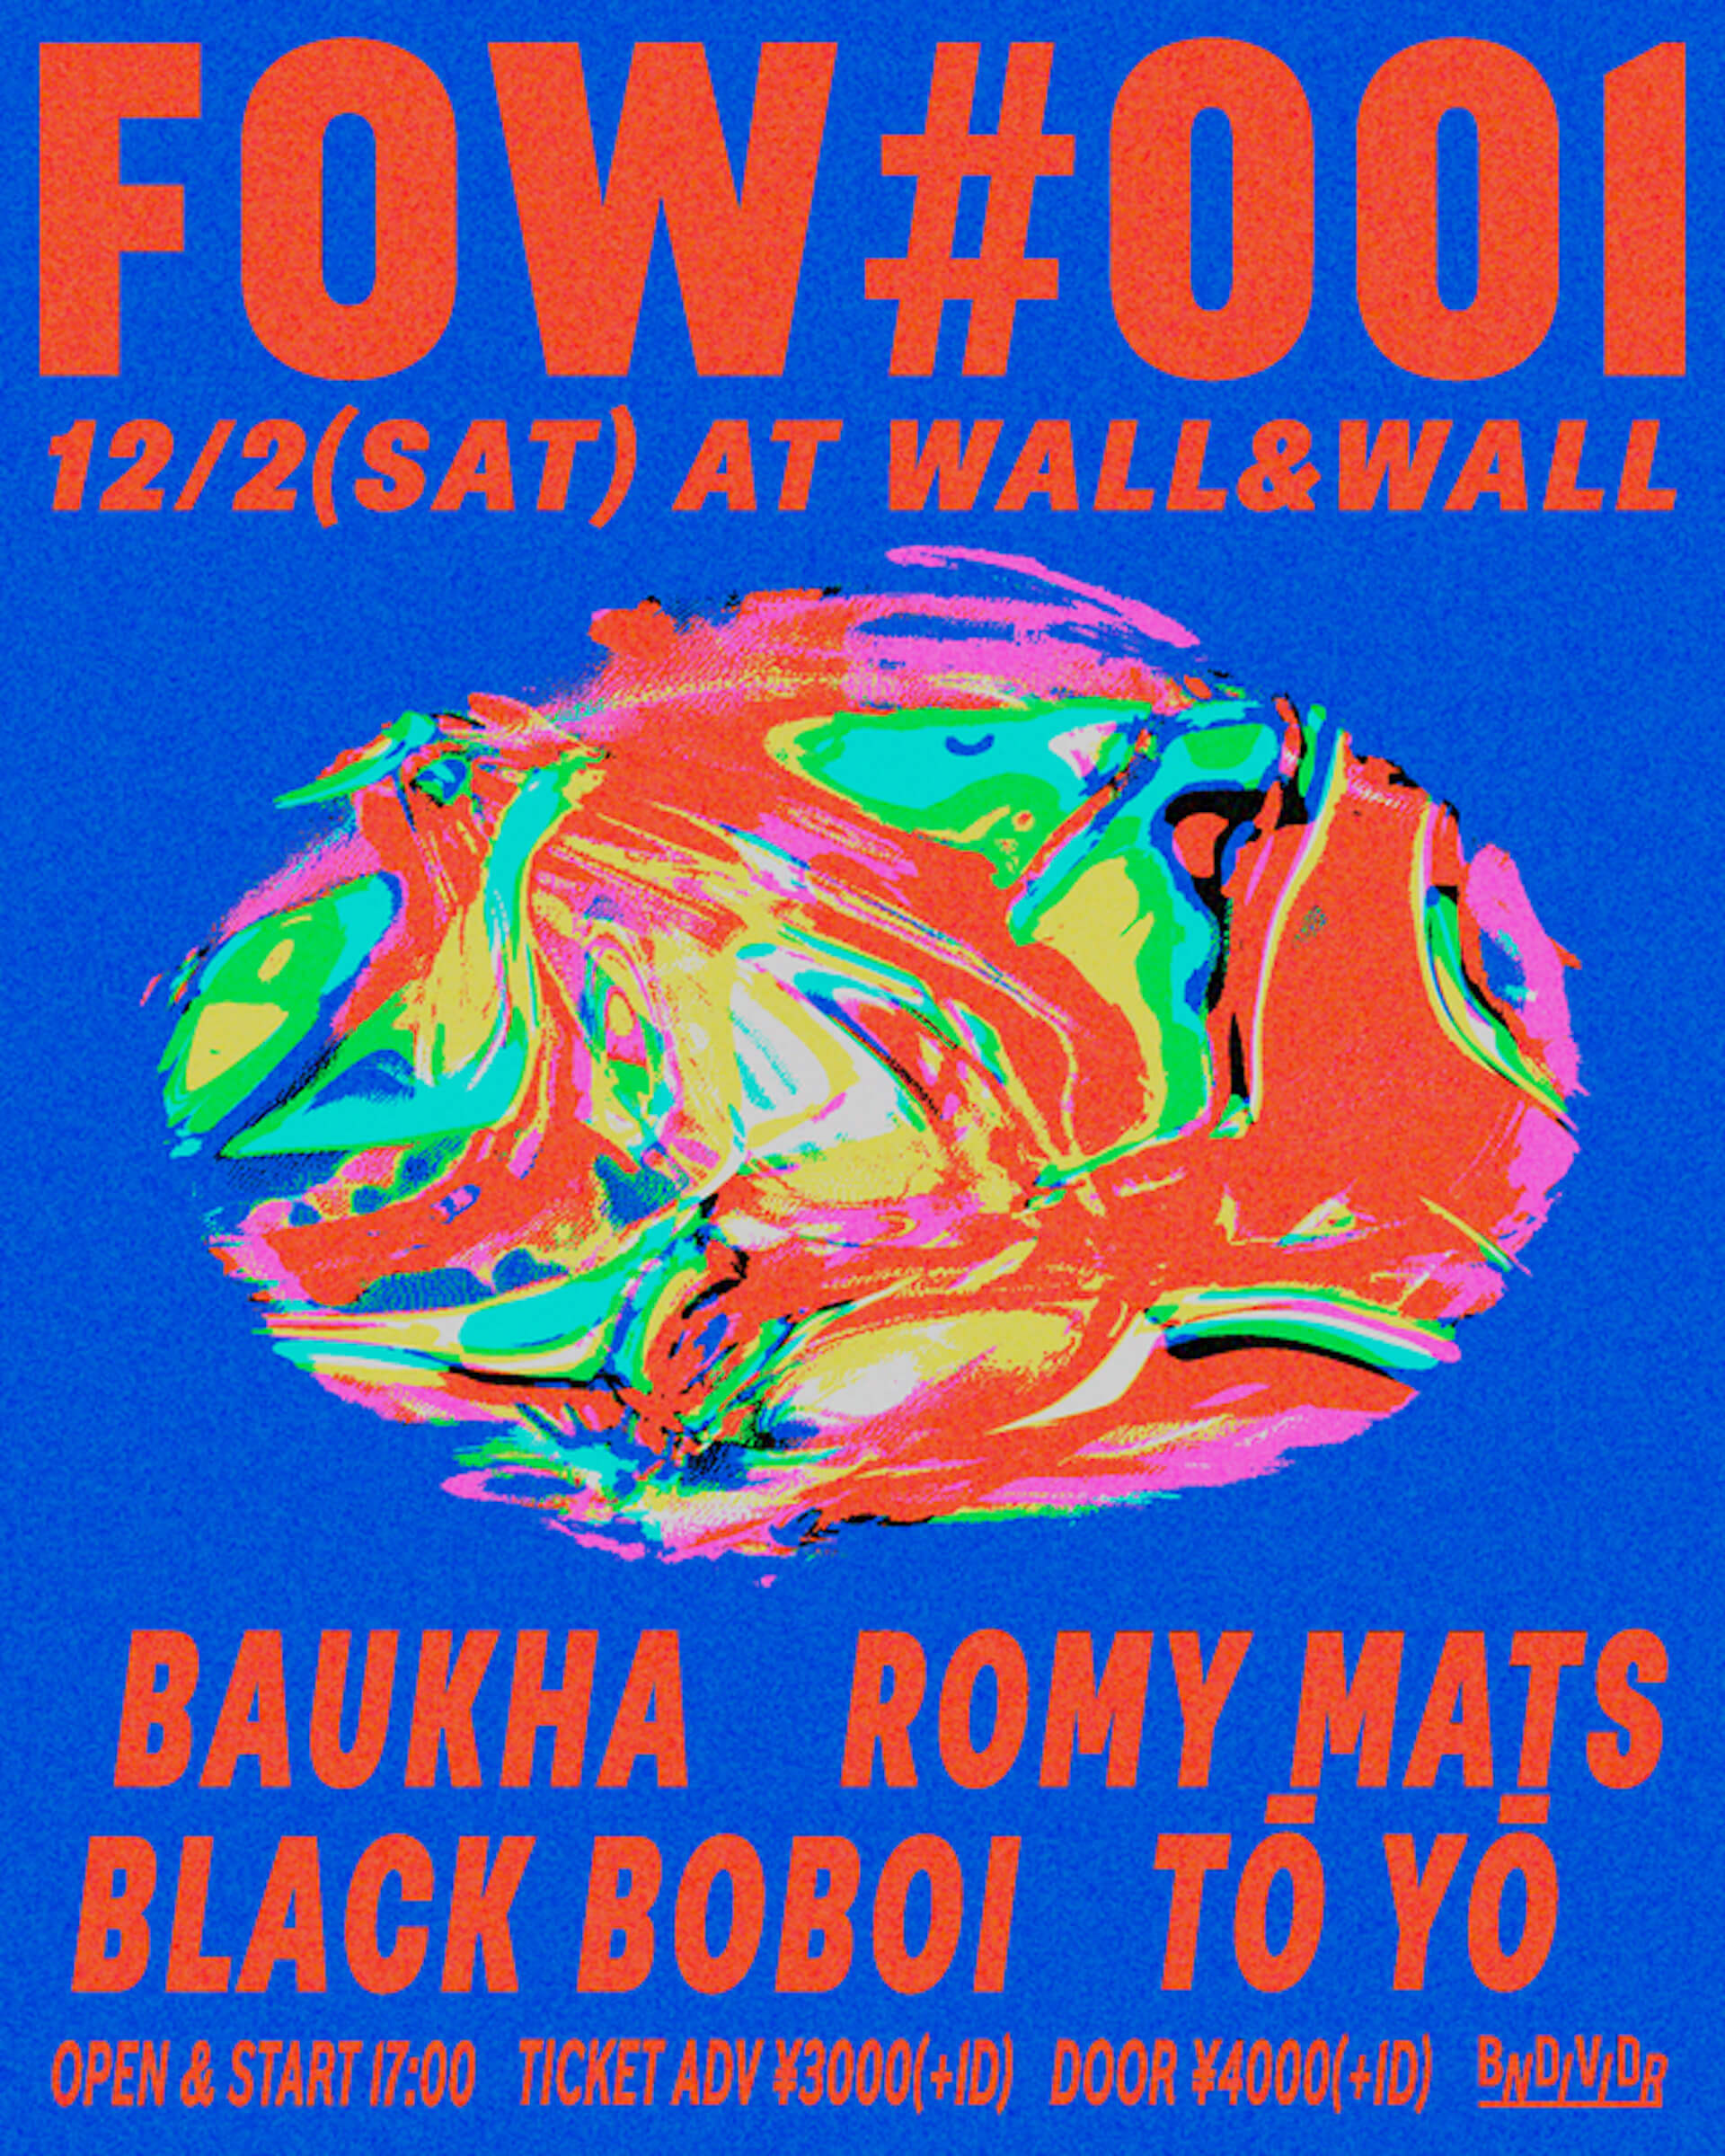 エレクトロニックグループ・BAUKHA、約4年ぶりとなるライブ活動を表参道WALL&WALLにて再開｜Black Boboi、Tō Yō、Romy Matsらが共演 music231005-baukha3